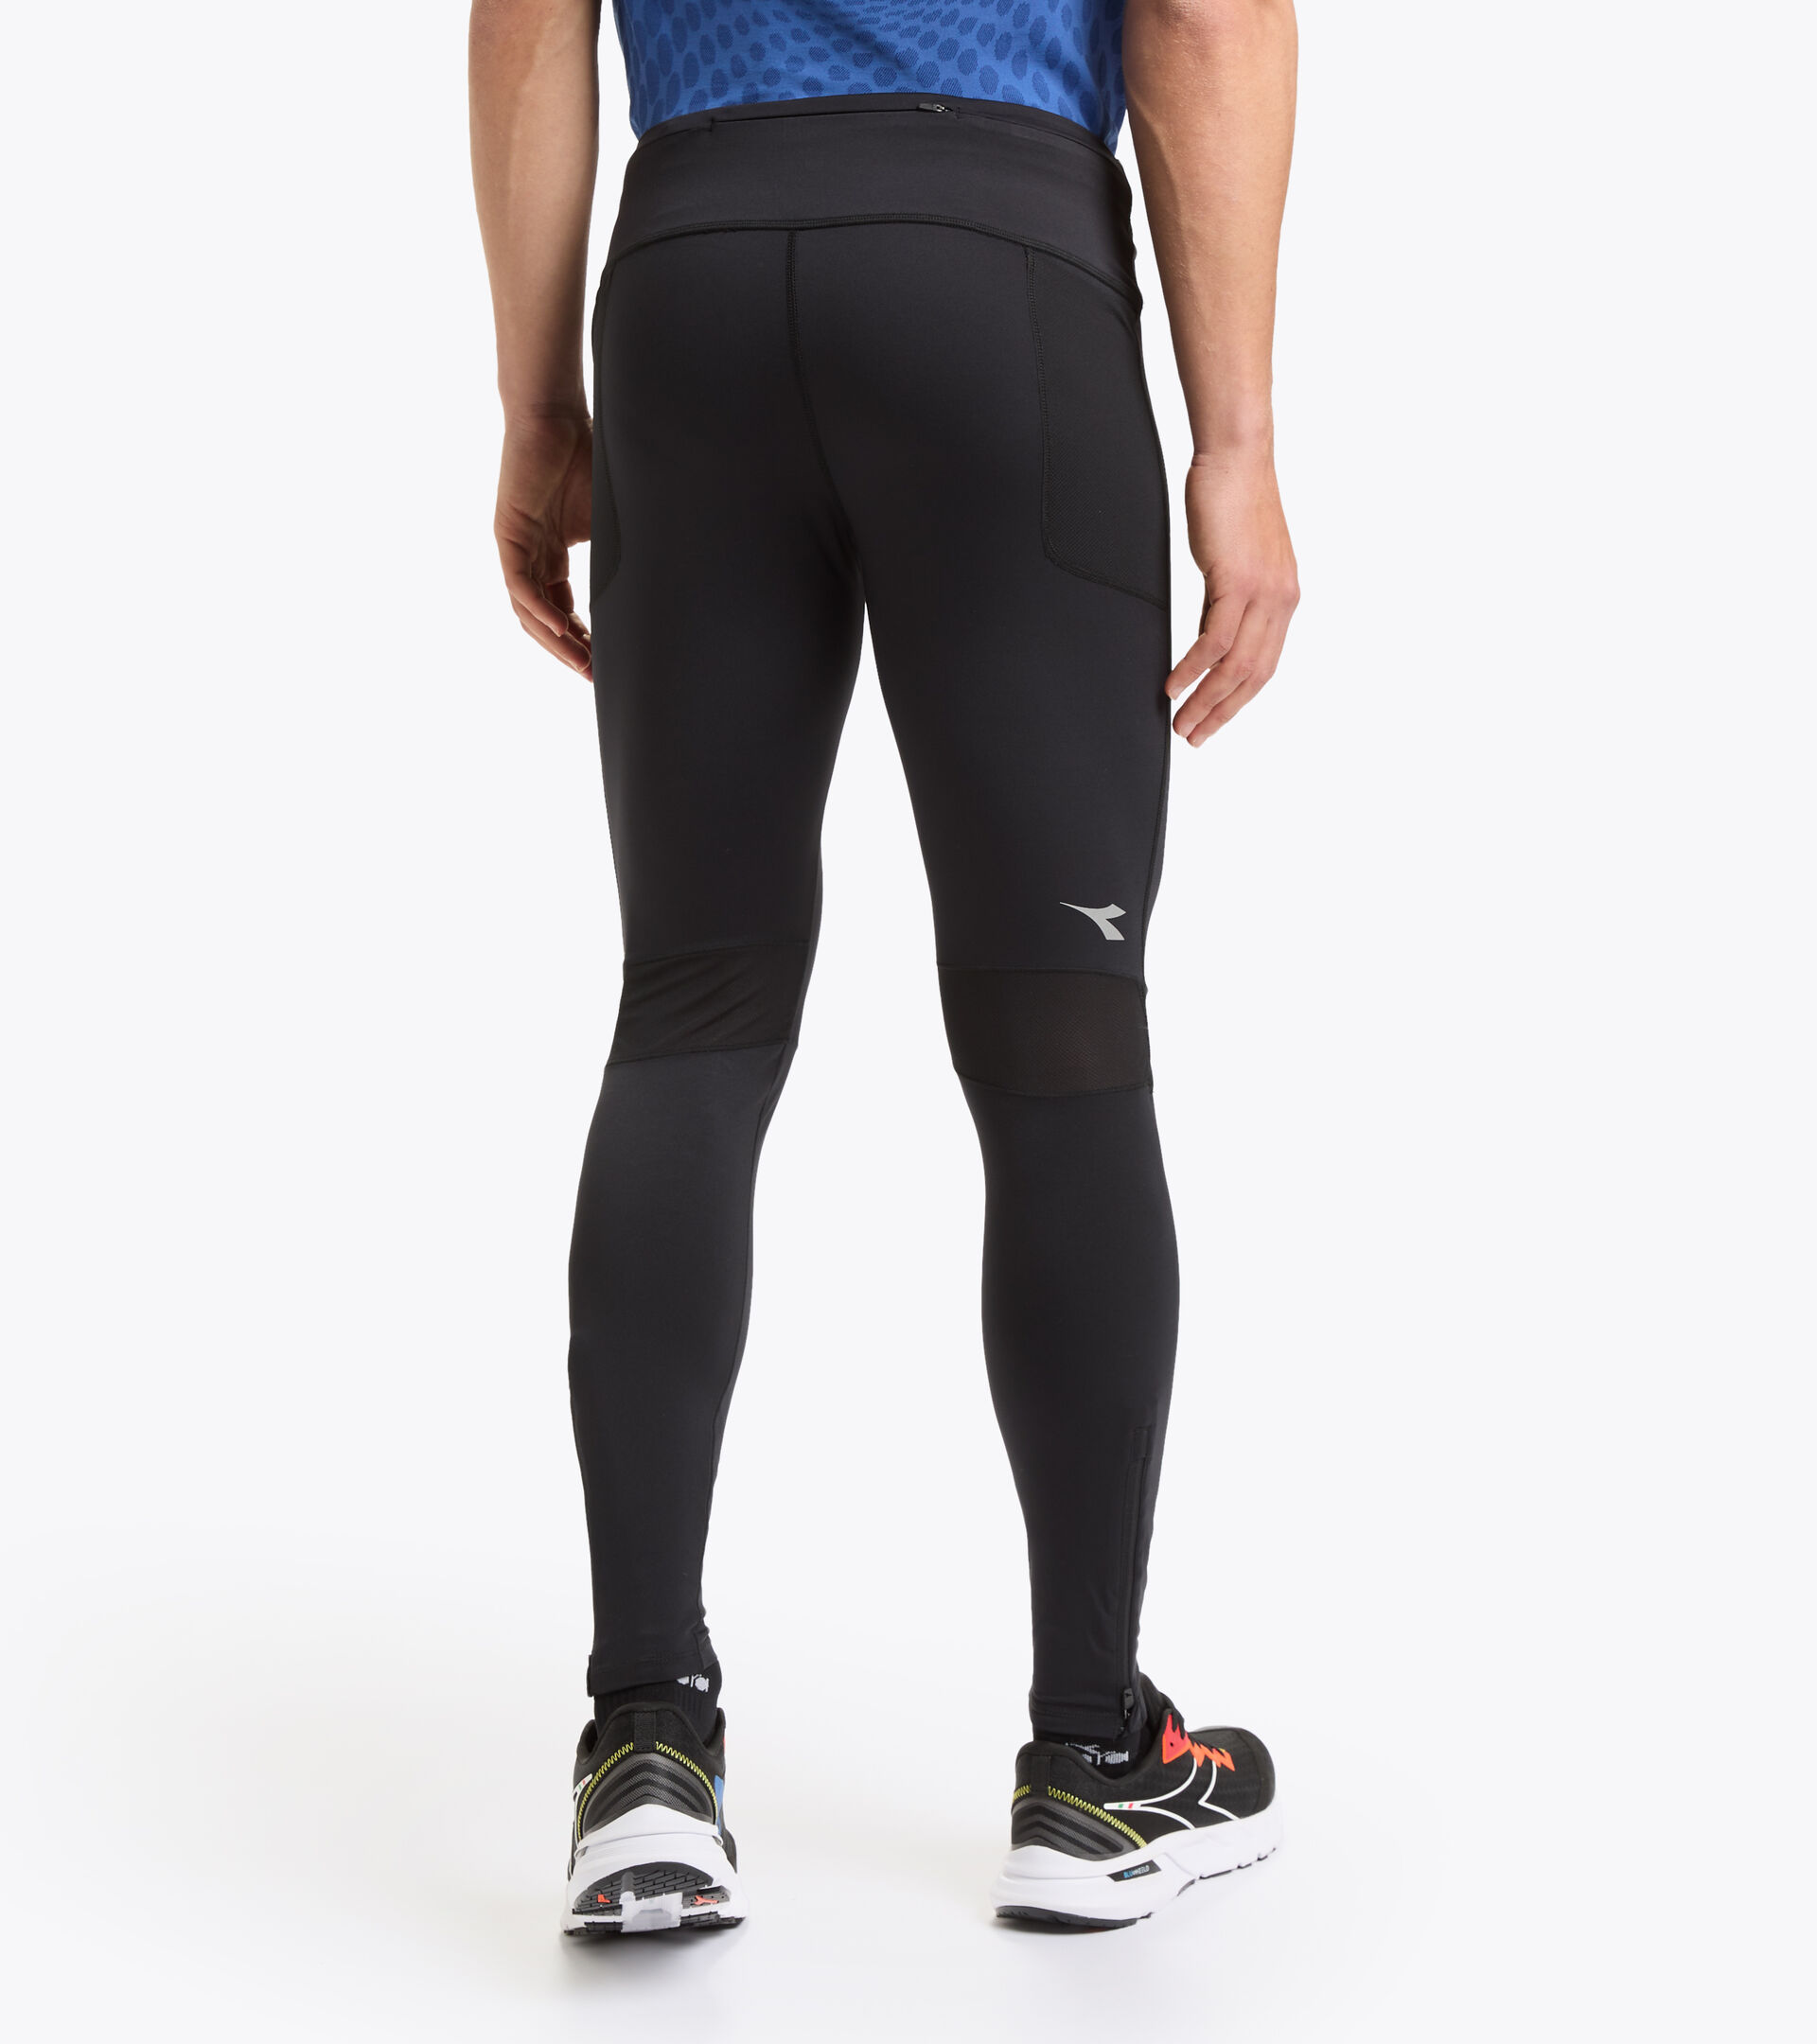 Men's Running Tights, Leggings & Waterproof Trousers